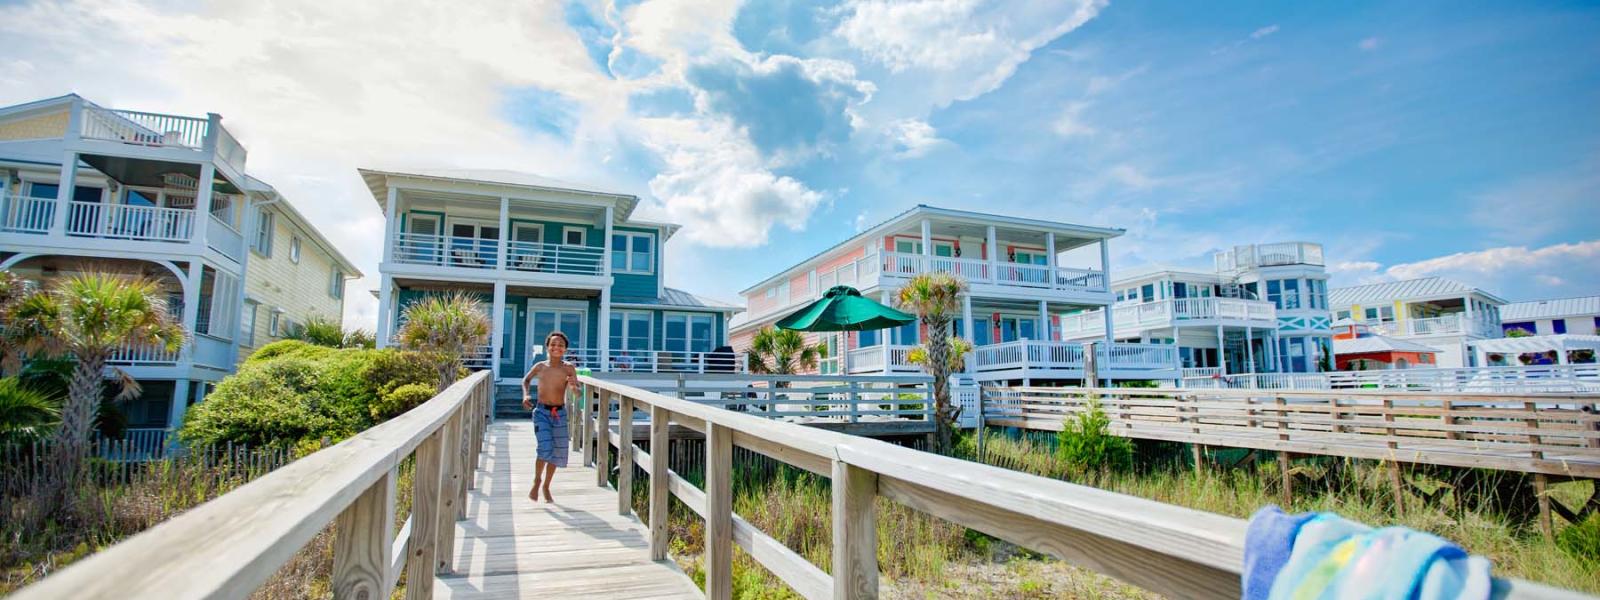 Wilmington Nc Vacation Rentals Condos Beach House Rentals